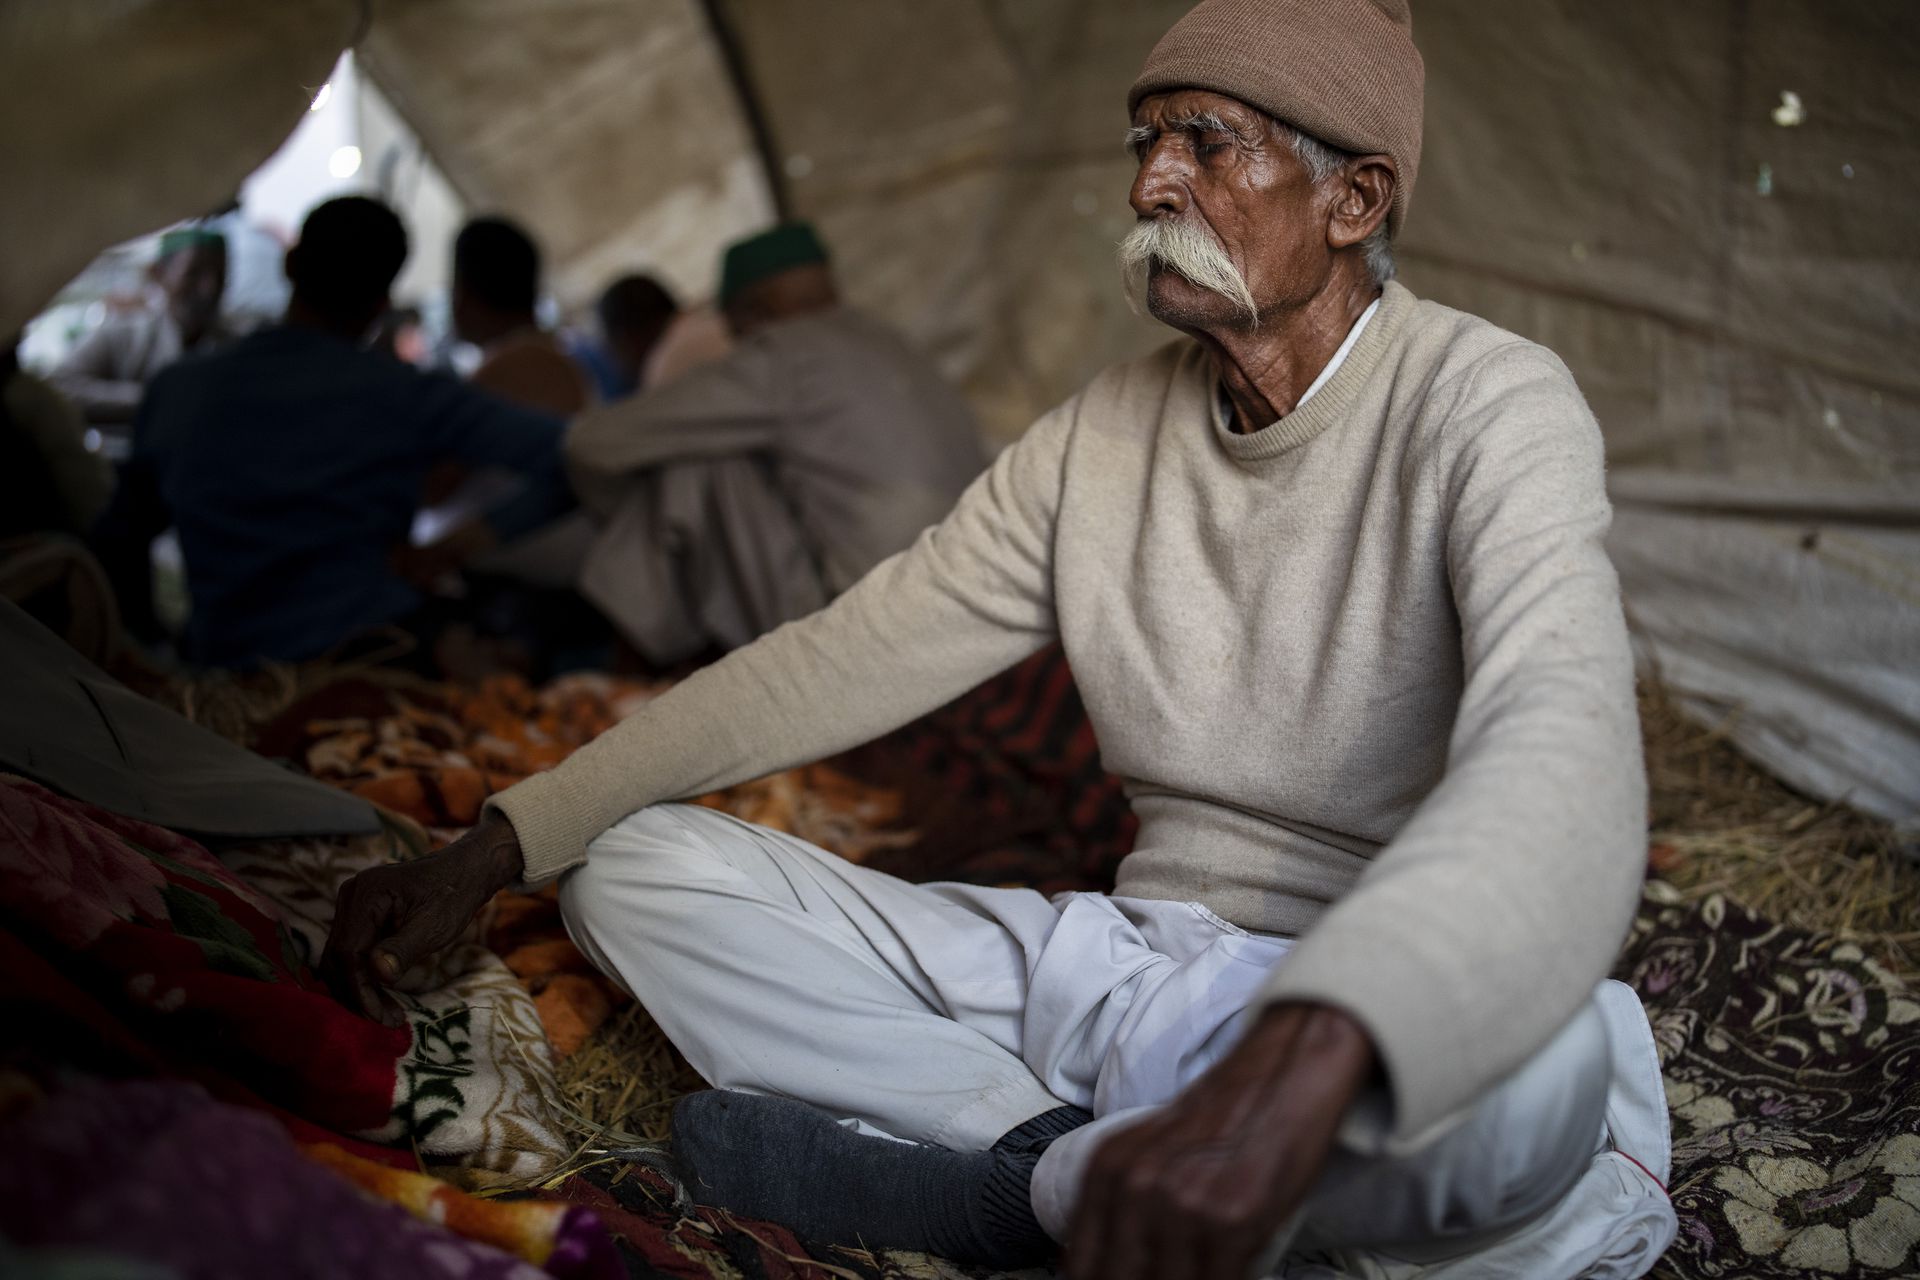 在印度德里和北方邦交界处，一名年长的农民坐在营地里沉思，抗议的农民封锁了一条主要公路。农民们担心，新的立法将减少他们的收入，并导致公司的剥削，最终使他们失去土地。（美联社）